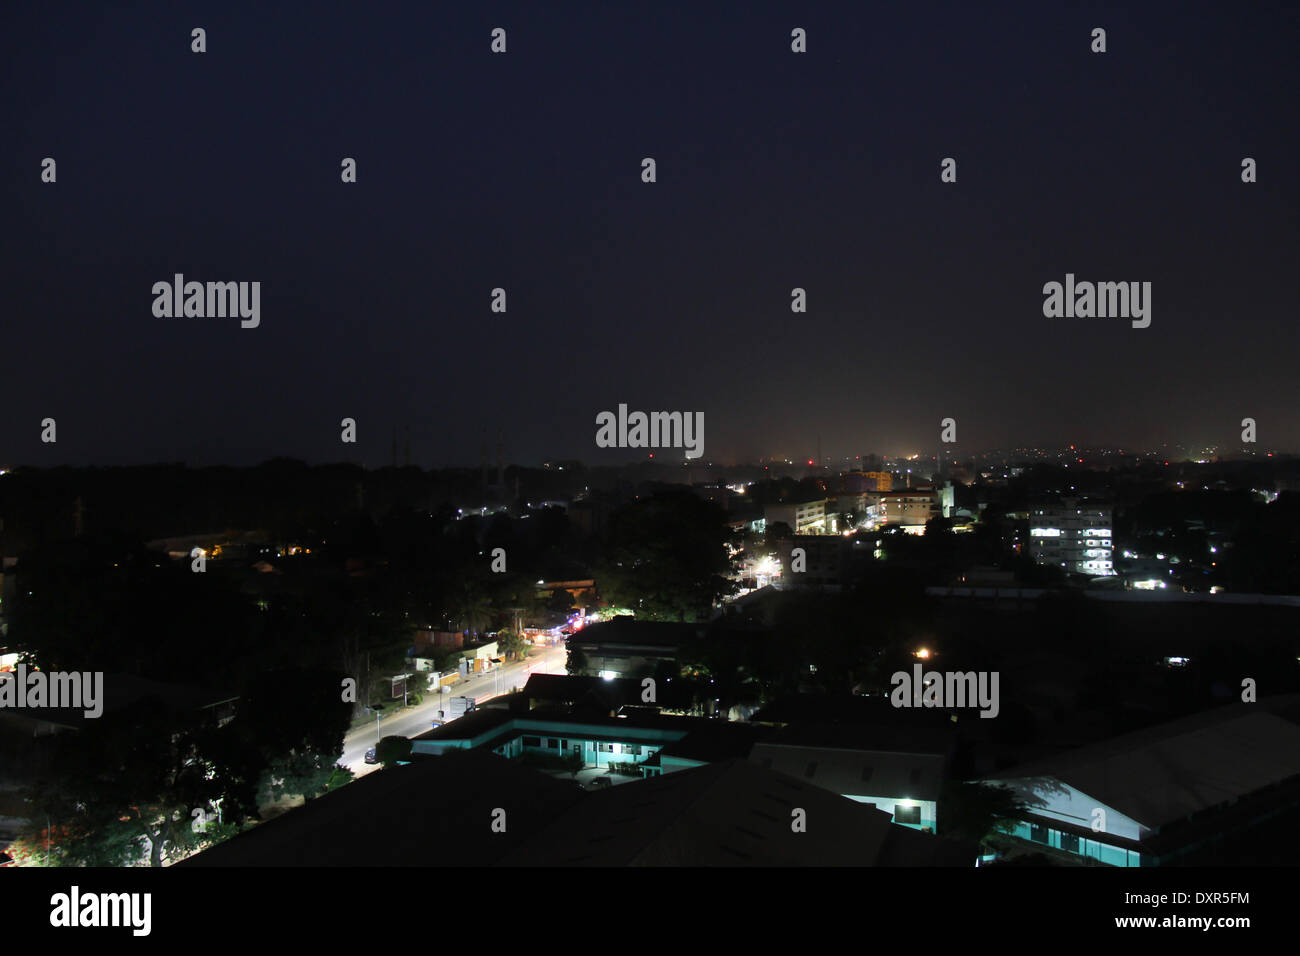 (140329) -- CONACRY, 29 de marzo de 2014 (Xinhua) -- Foto tomada el 25 de marzo de 2014 muestra la vista de la ciudad de Conakry durante la noche, la capital de Guinea. Este grupo de foto, tomada alrededor de la tierra, hora del día, que cae el 29 de marzo de este año, muestra la vista nocturna diaria de algunas ciudades principales corto de electricidad el poder en países de África subsahariana, como Mozambique, República del Congo, Ghana, Ruanda, Togo, etc. Guinea sólo puede garantizar 24 horas de alimentación para aeropuertos y puertos, dejando a otra parte del país con extrema insuficiencia de electricidad. Parte de Conacry suburbios va sin alimentación durante meses un Foto de stock